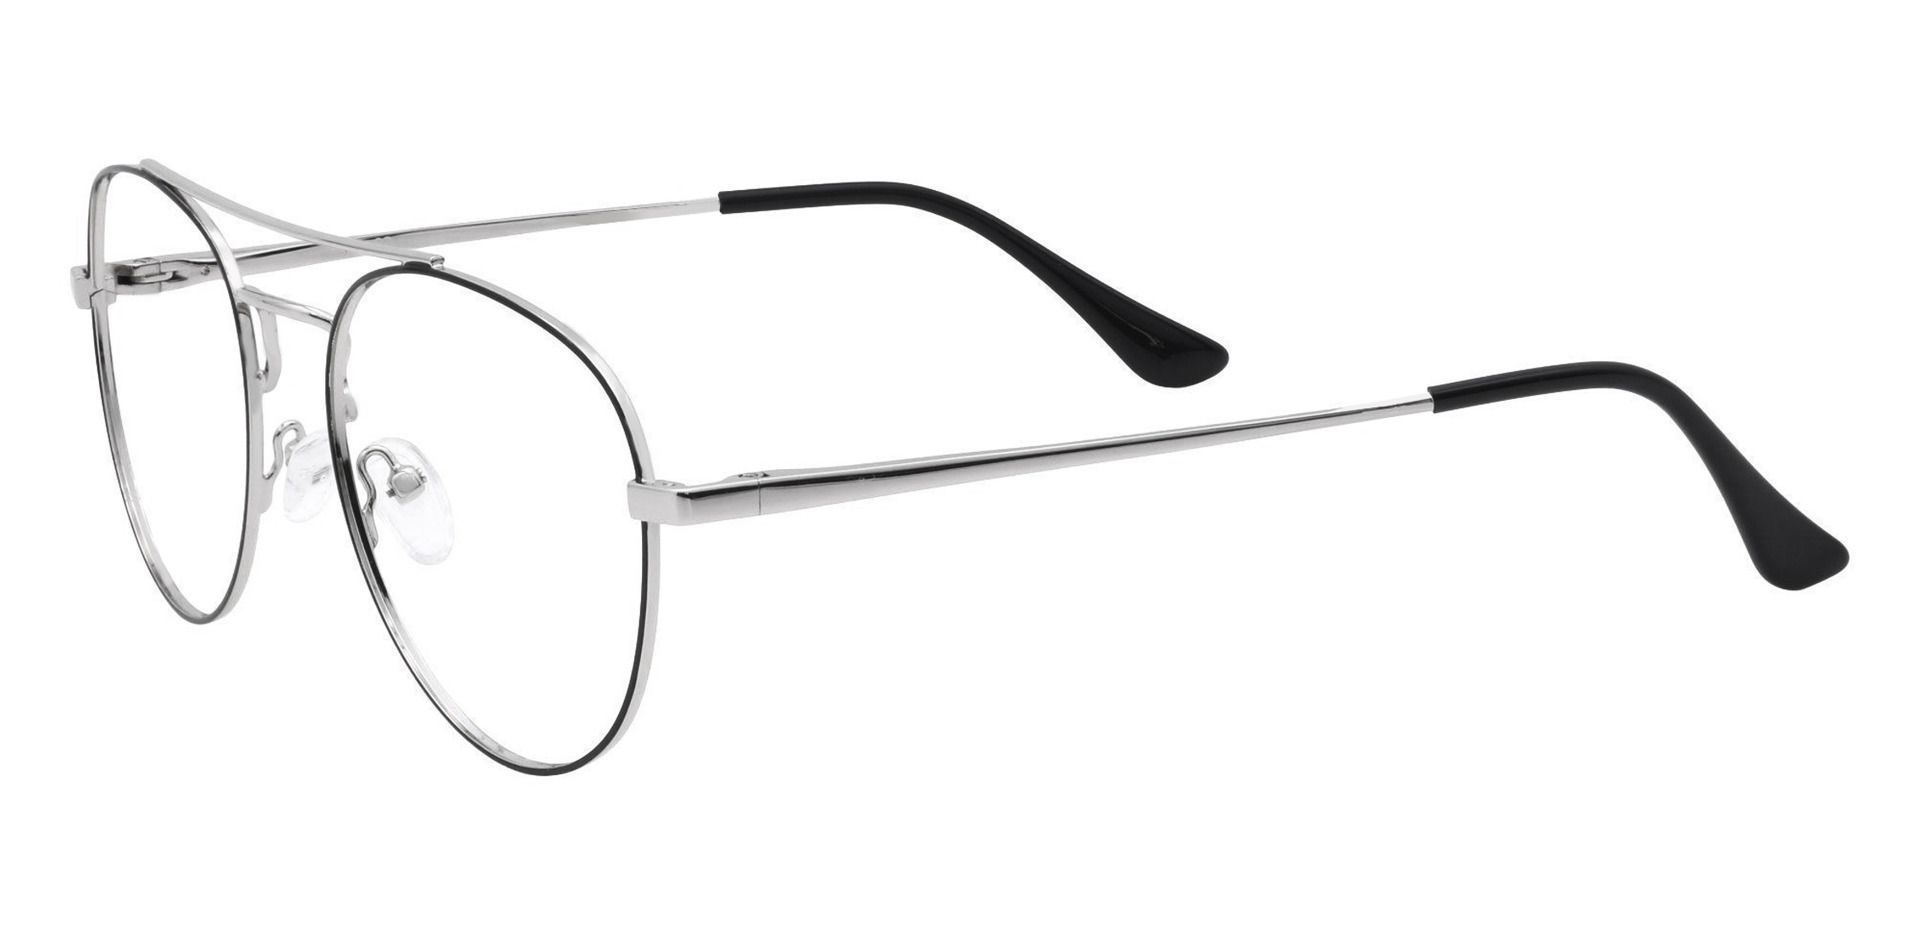 Trapp Aviator Non-Rx Glasses - Gray